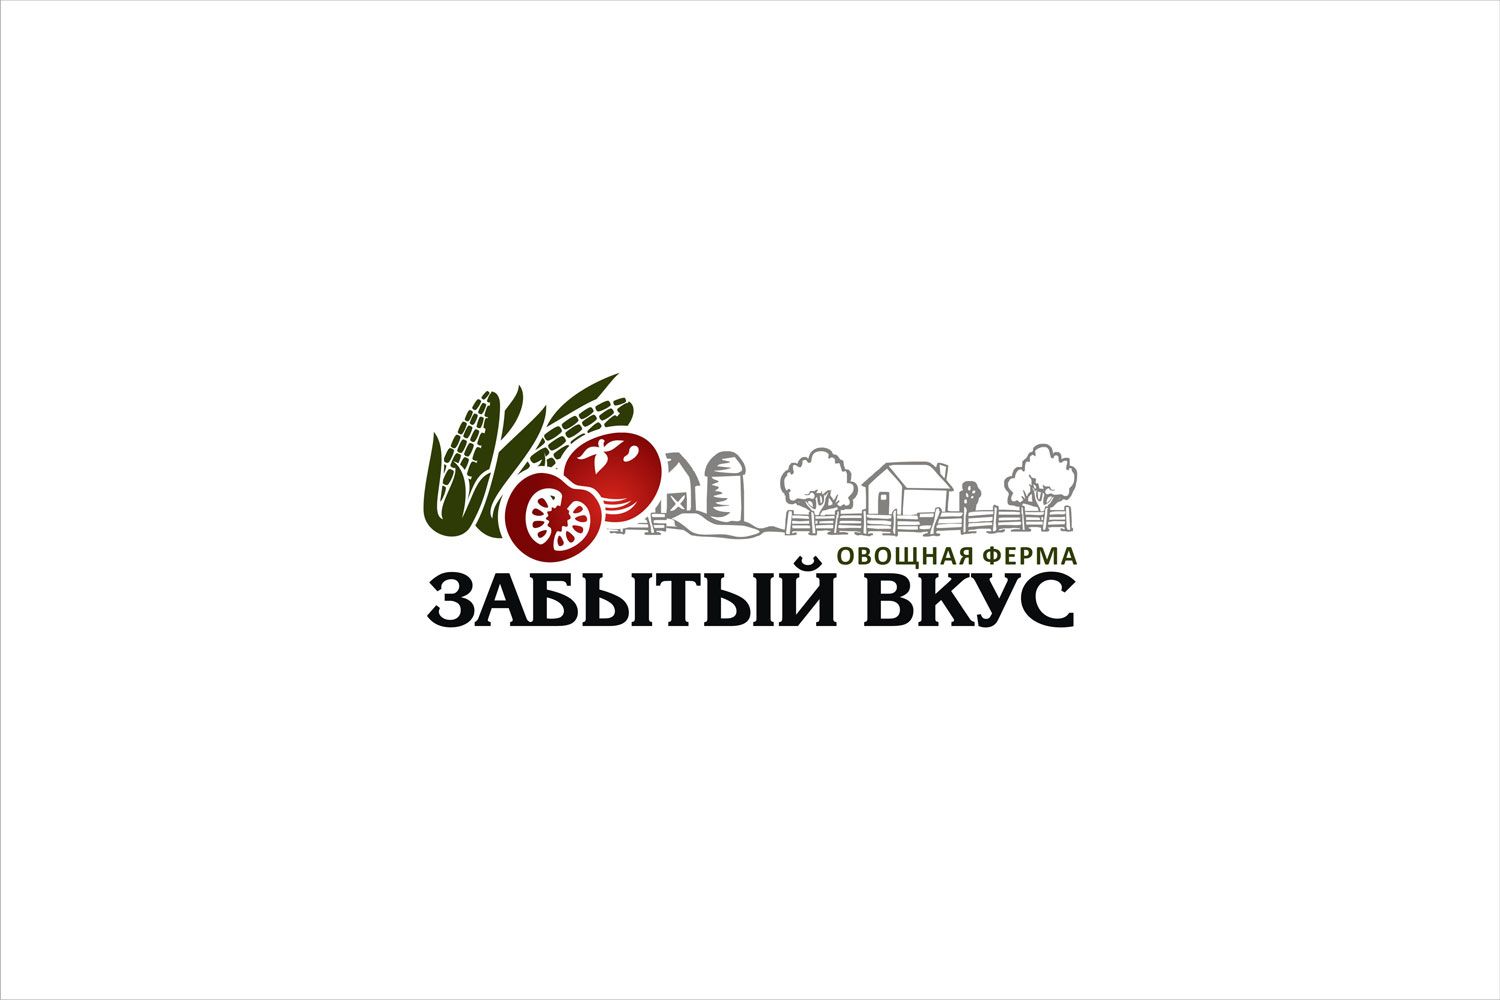 Лого и фирменный стиль для Овощная ферма Забытый Вкус - дизайнер graf1608